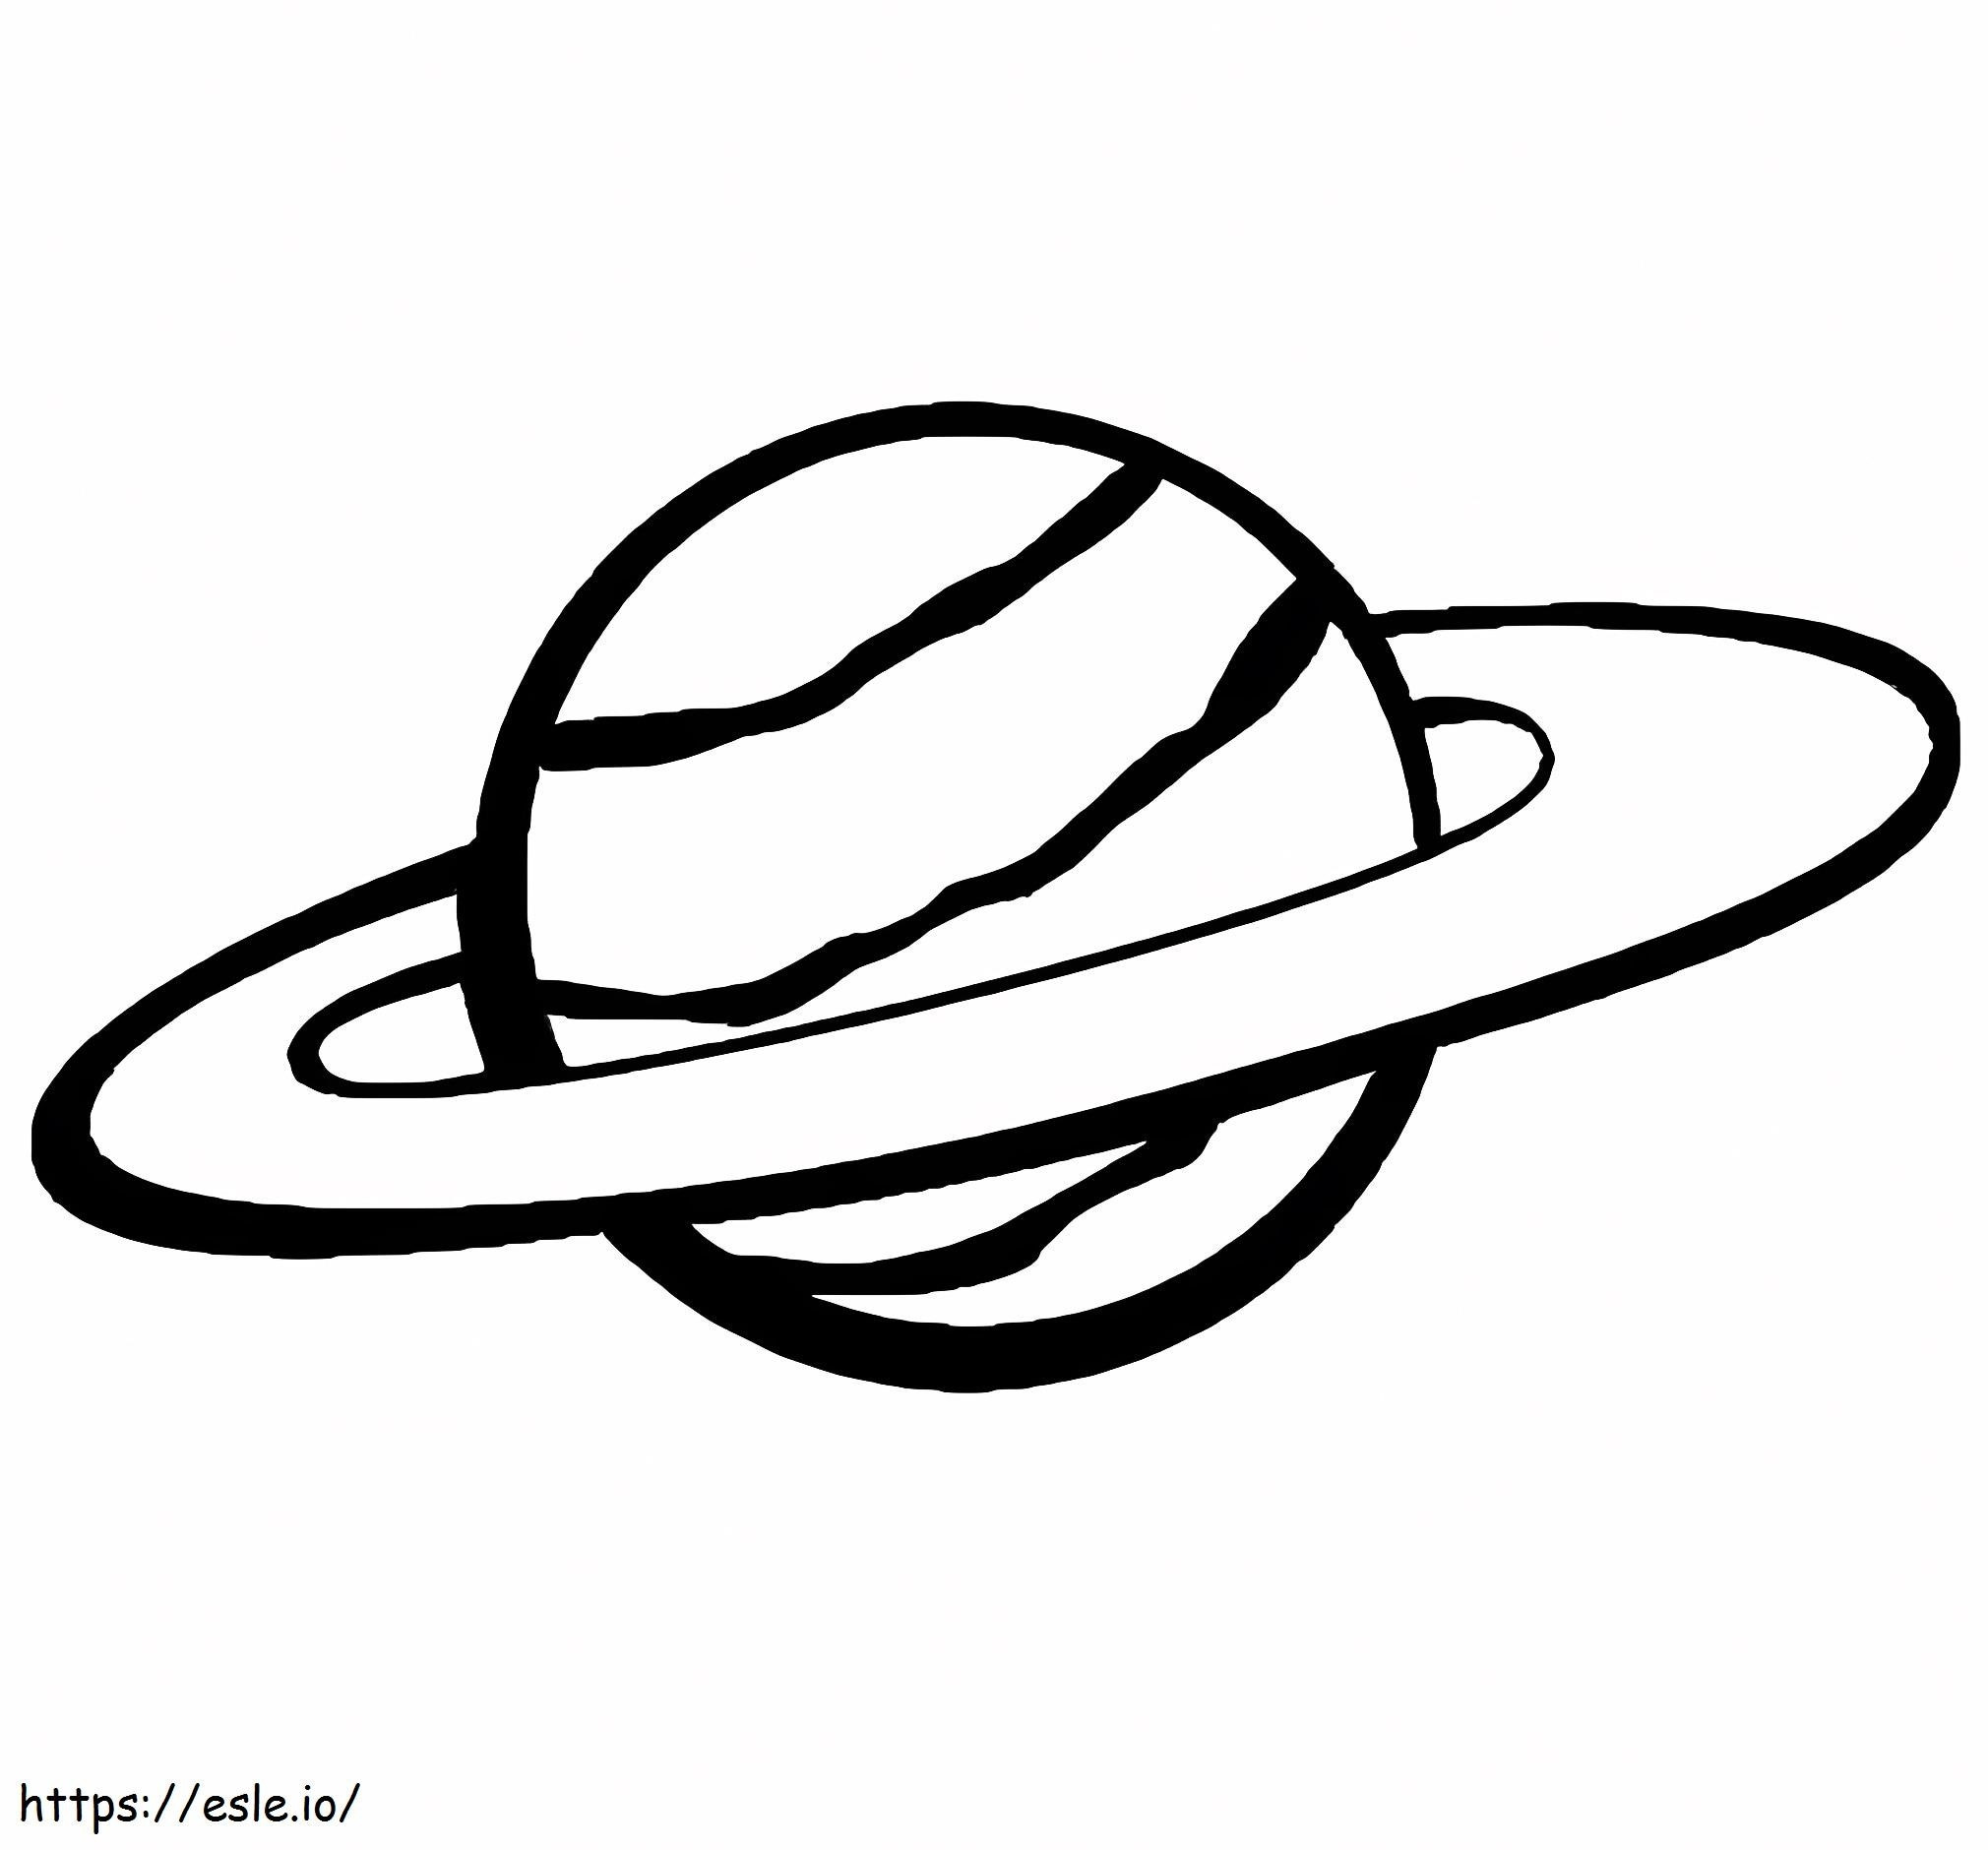 Saturno 1 da colorare